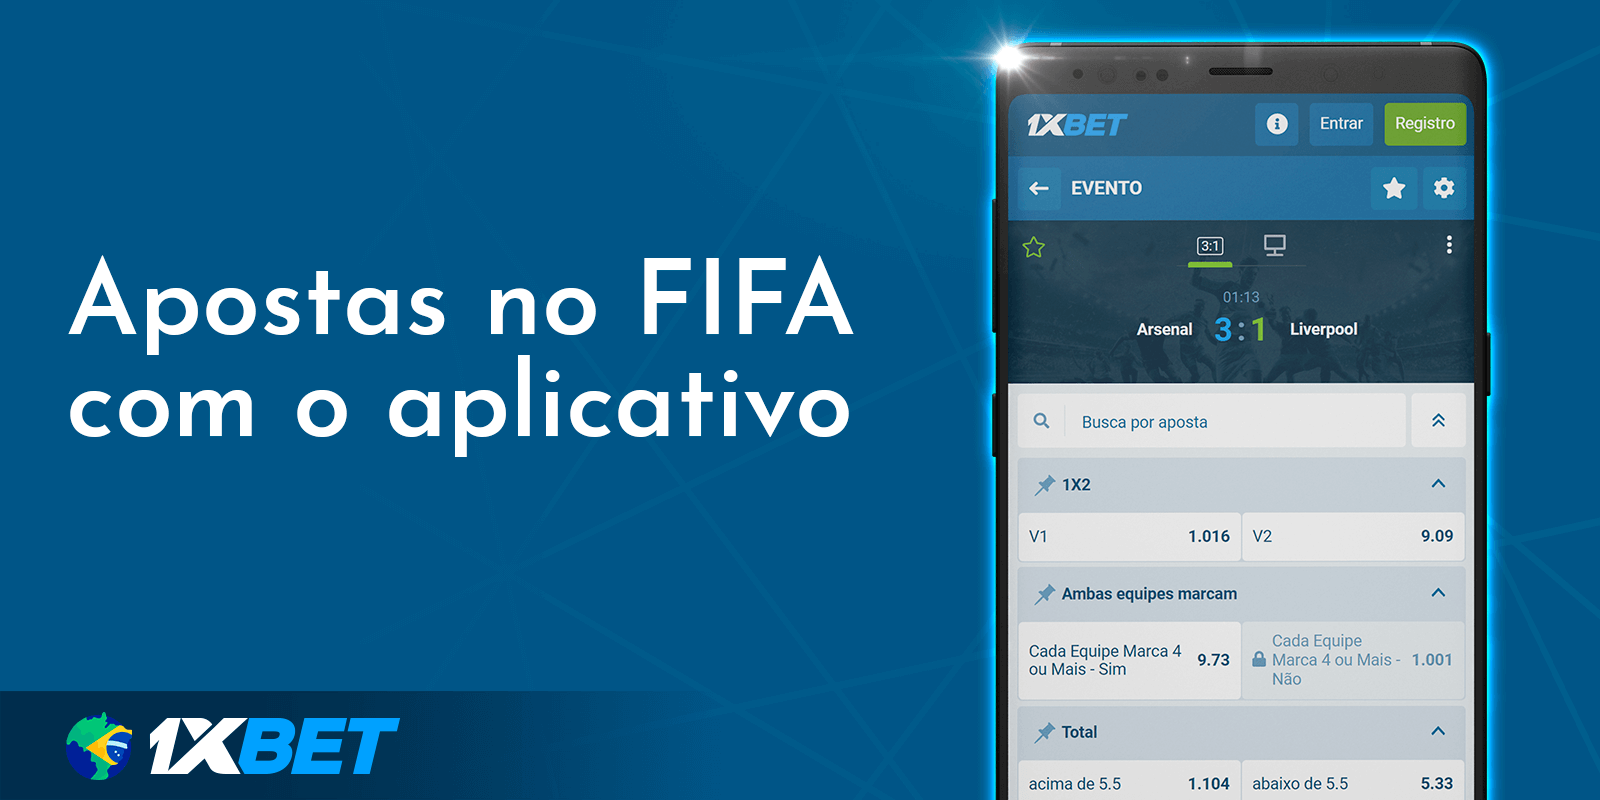 Apostas no FIFA com o aplicativo 1xbet